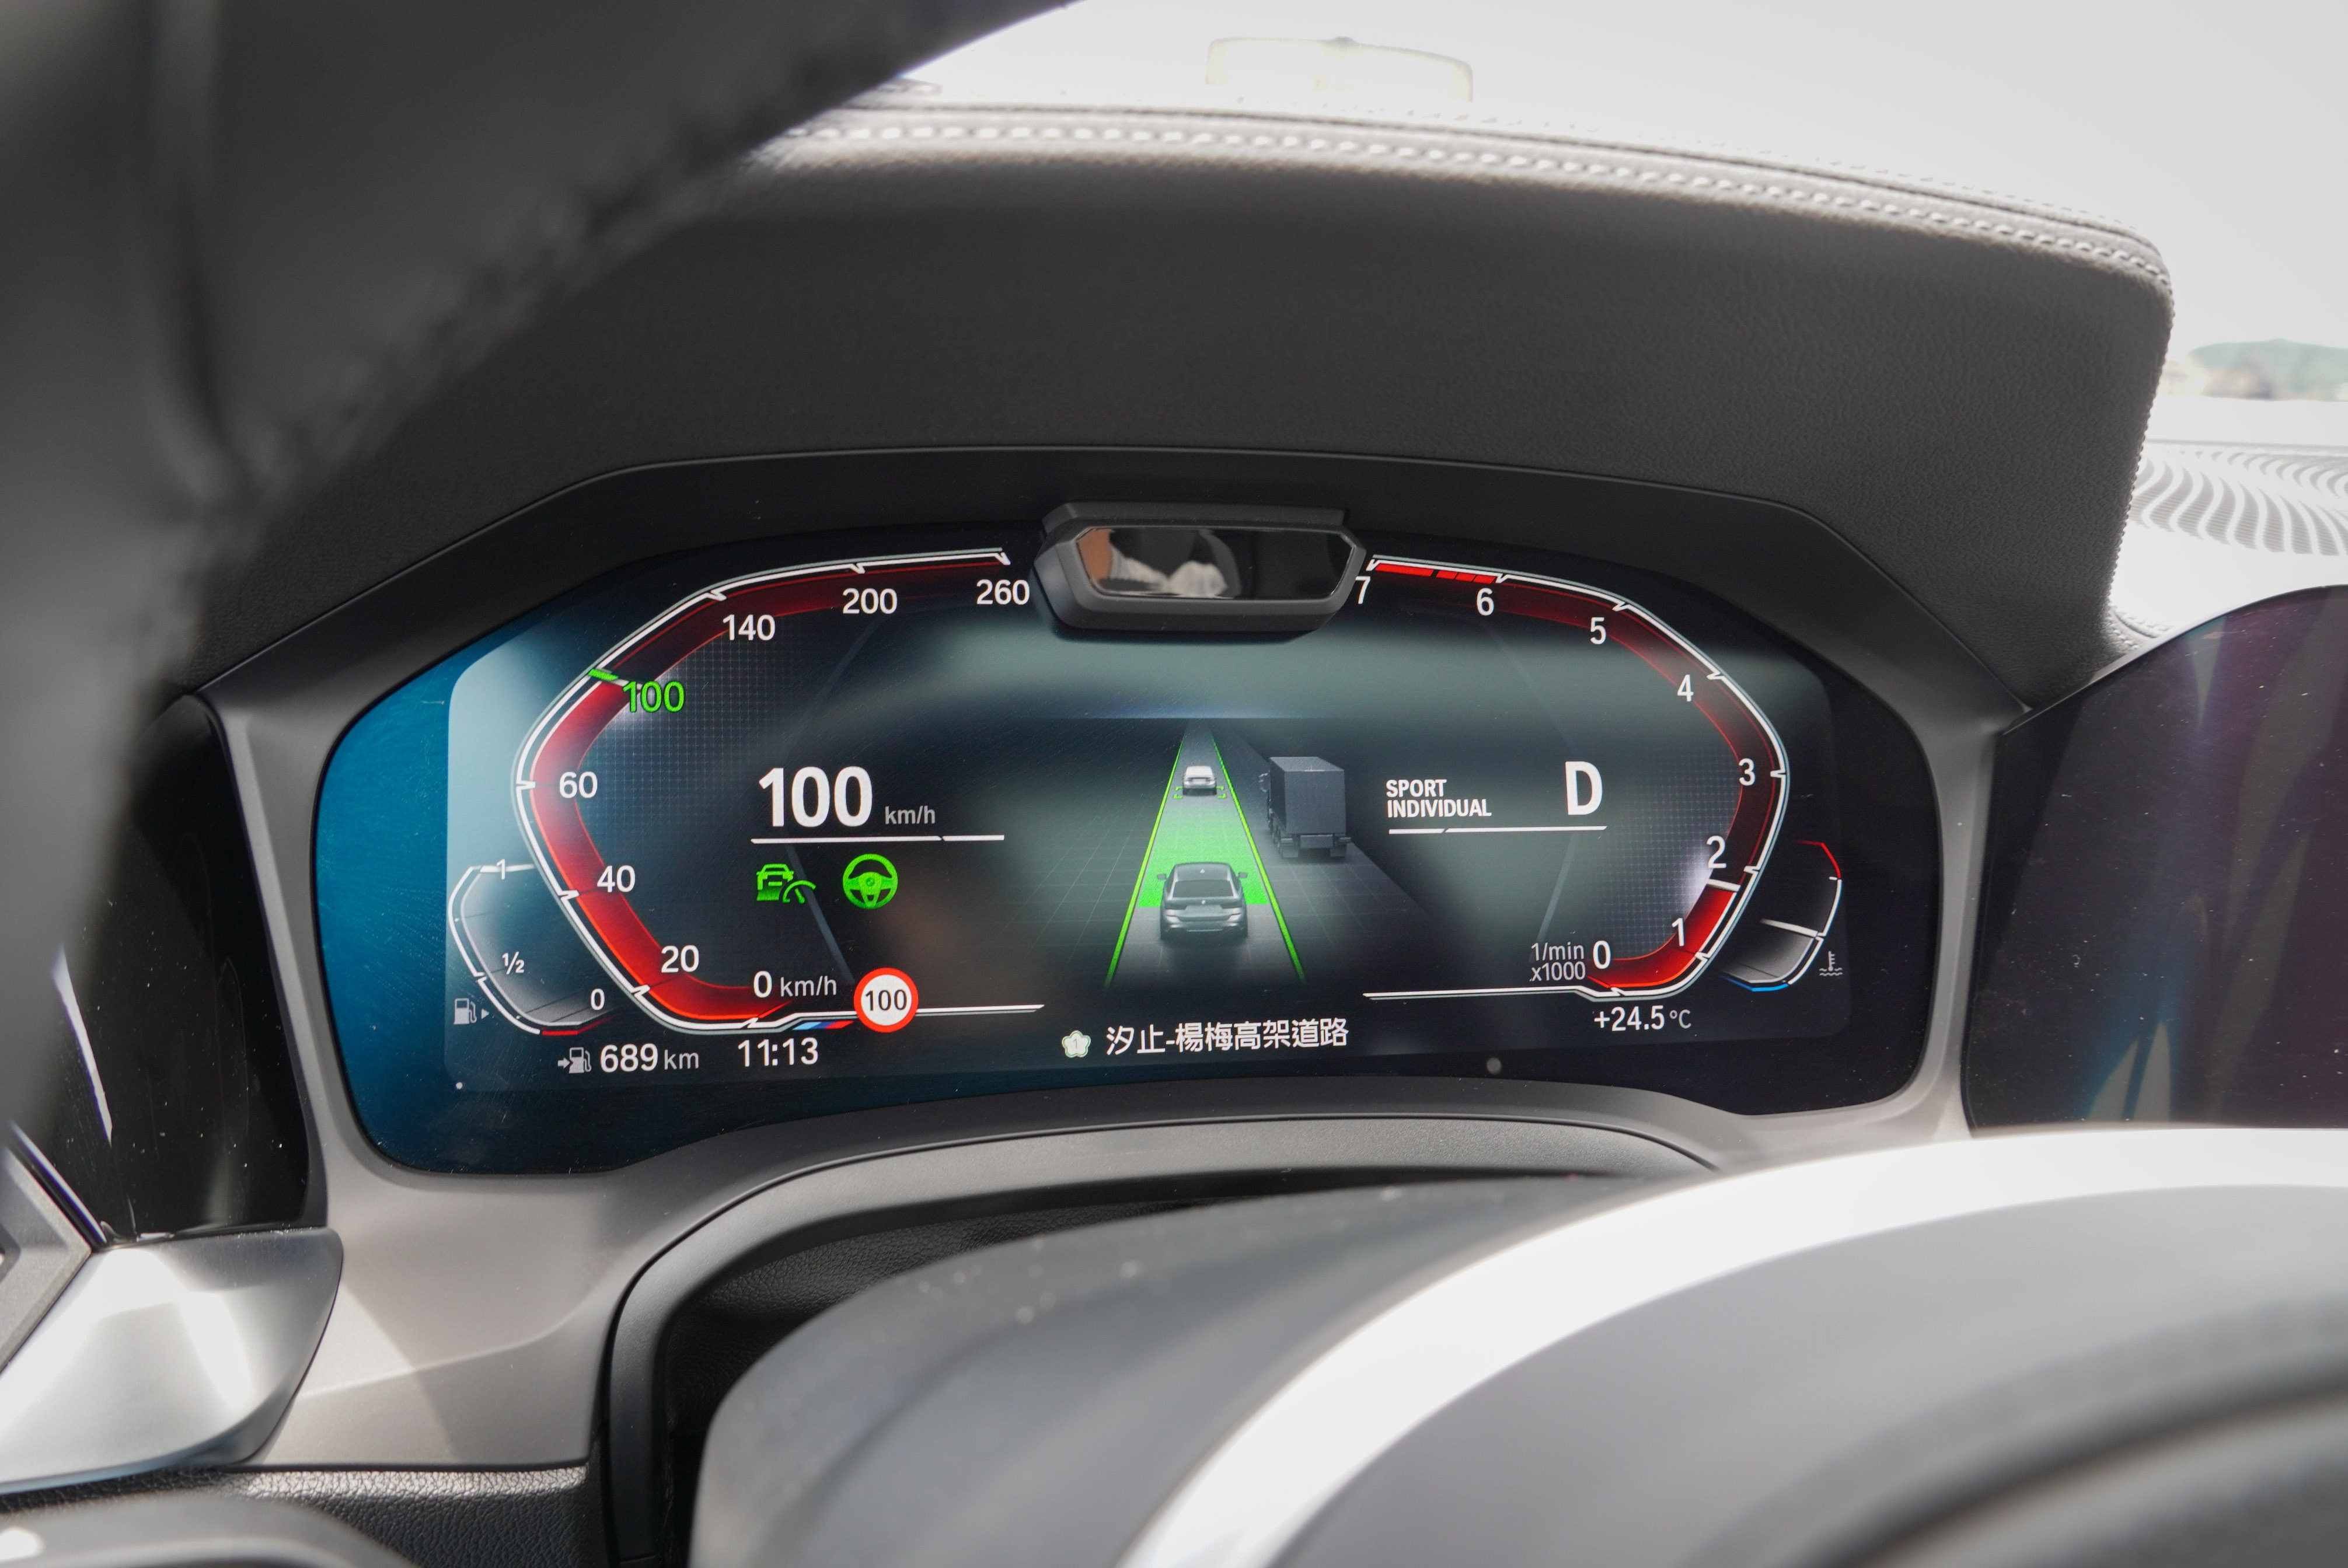 標配 BMW 全數位虛擬座艙，開啟智慧駕駛系統時儀錶中央提供豐富的交通資訊，連隔壁車道來車、前車插入等動態都有動畫顯示。